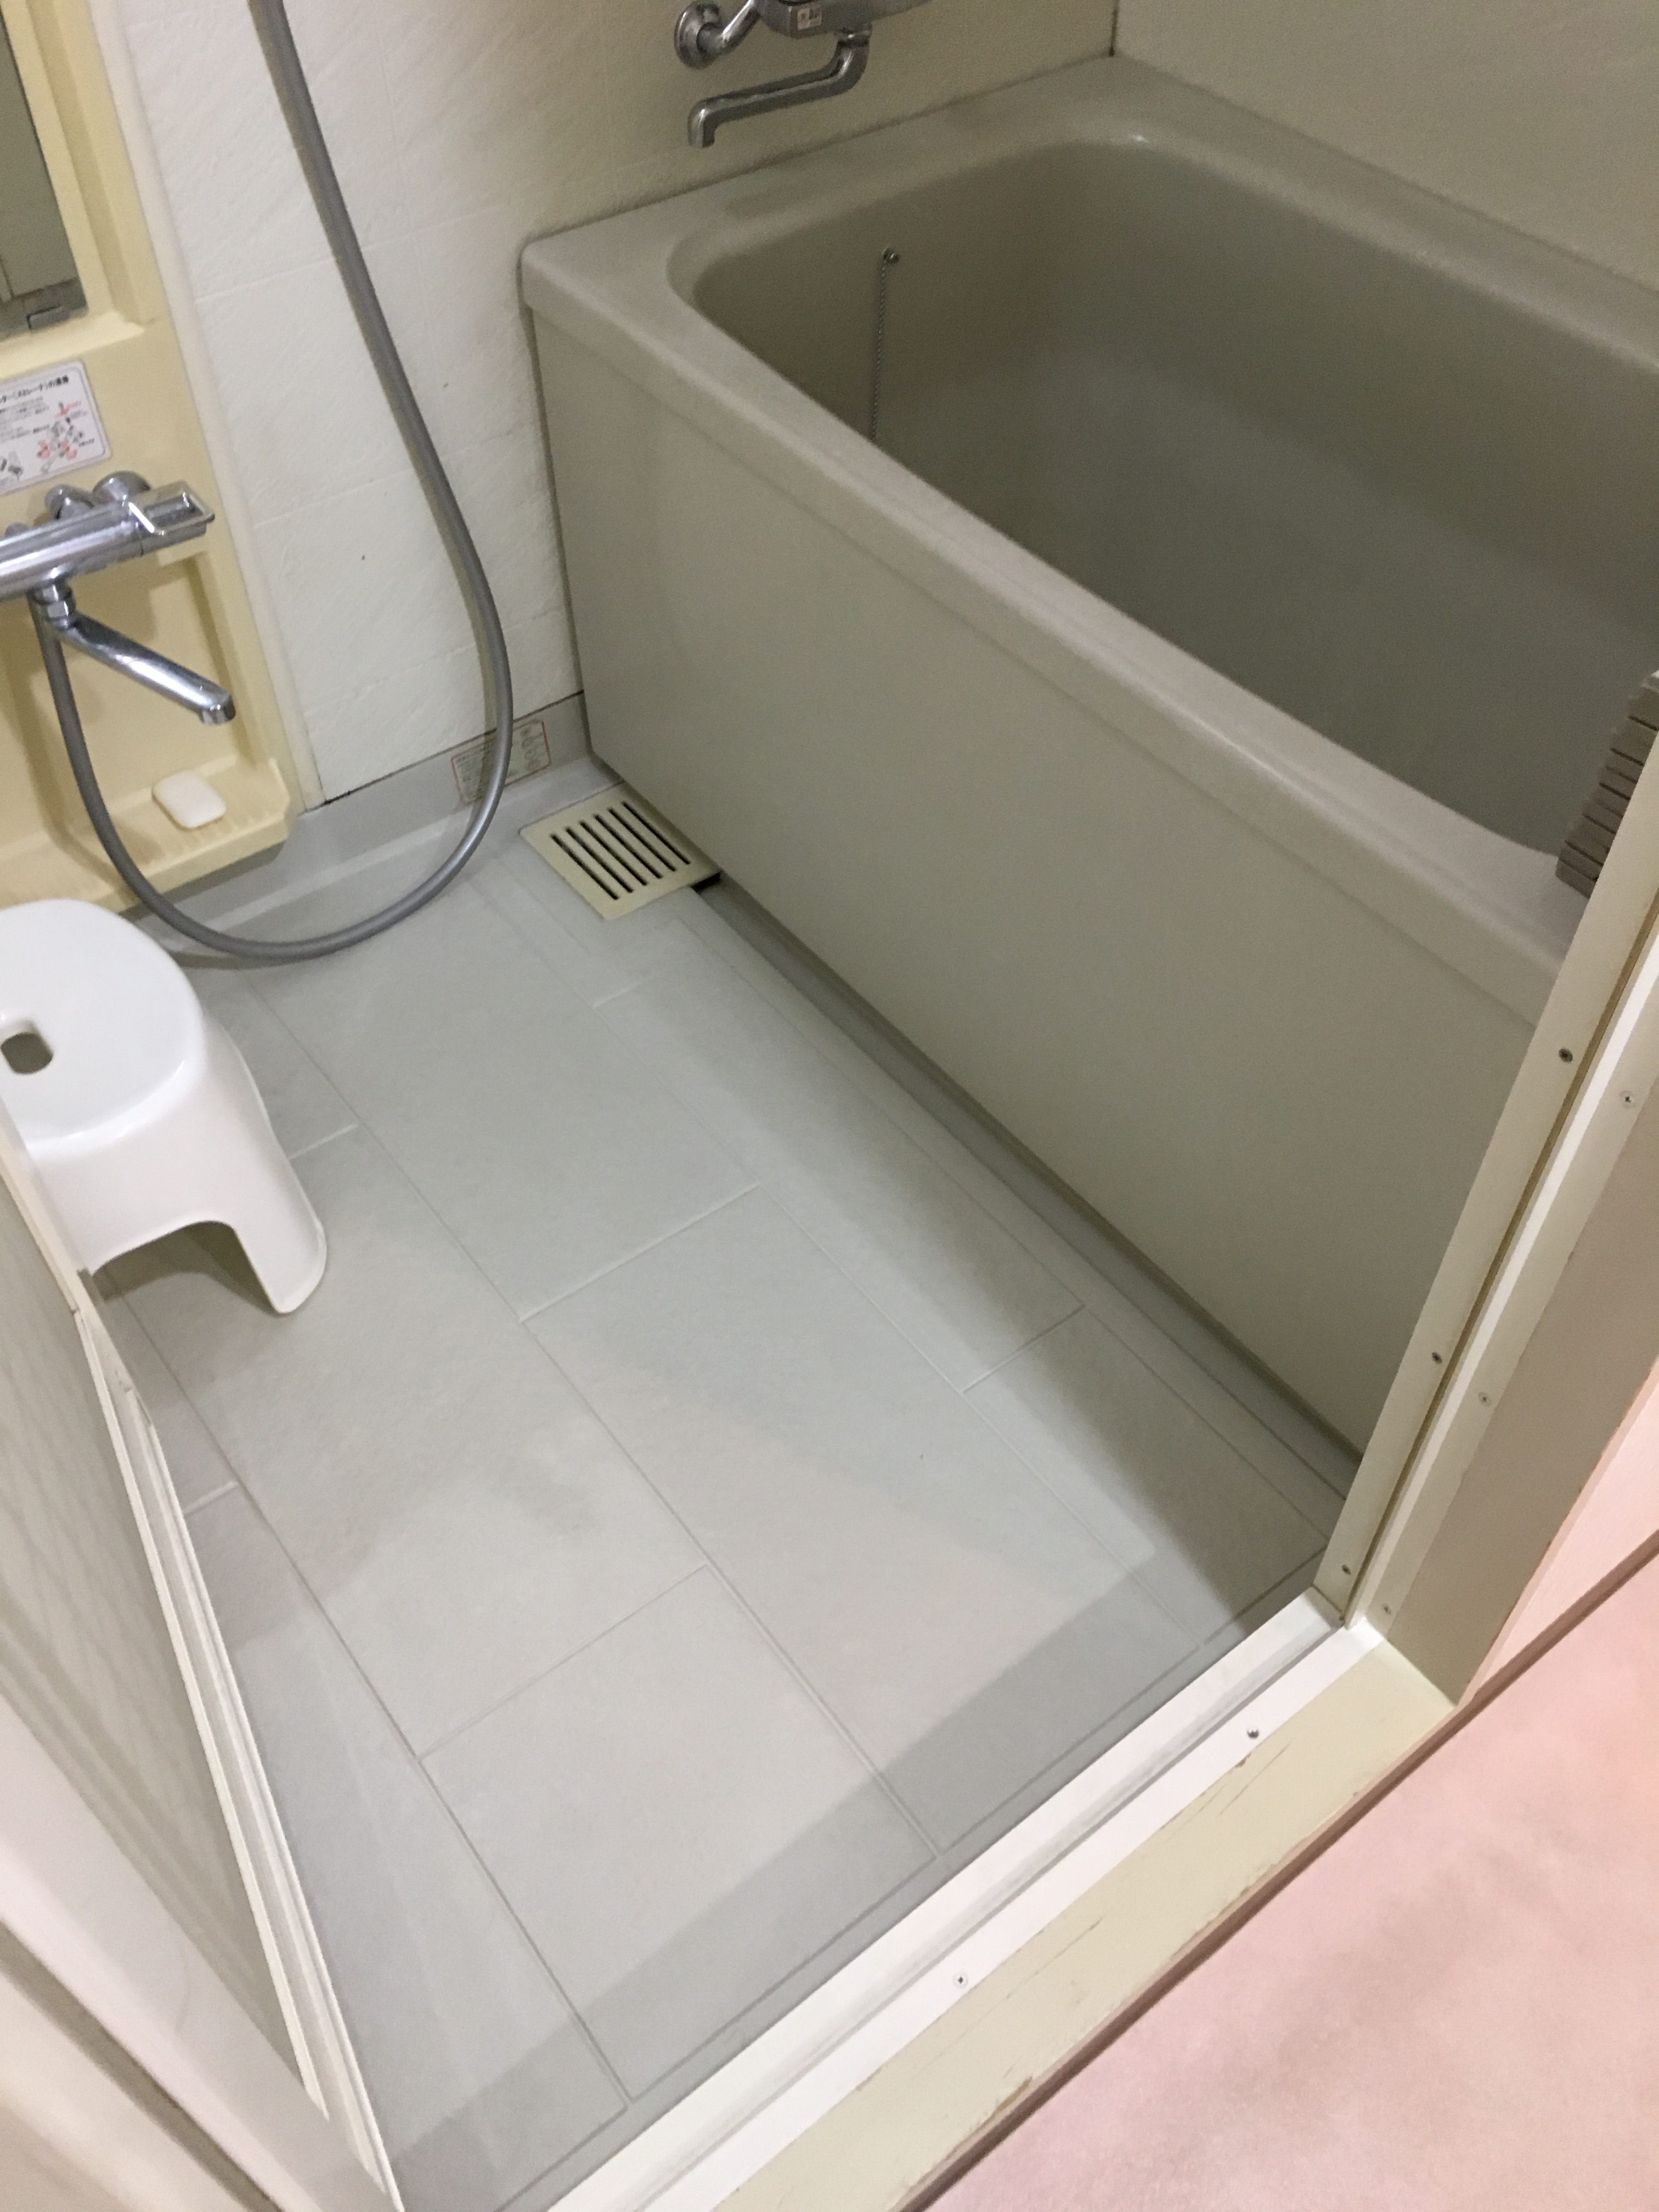 マンション 浴室改装 マエダハウジング 広島県実績no 1の水まわりリフォーム